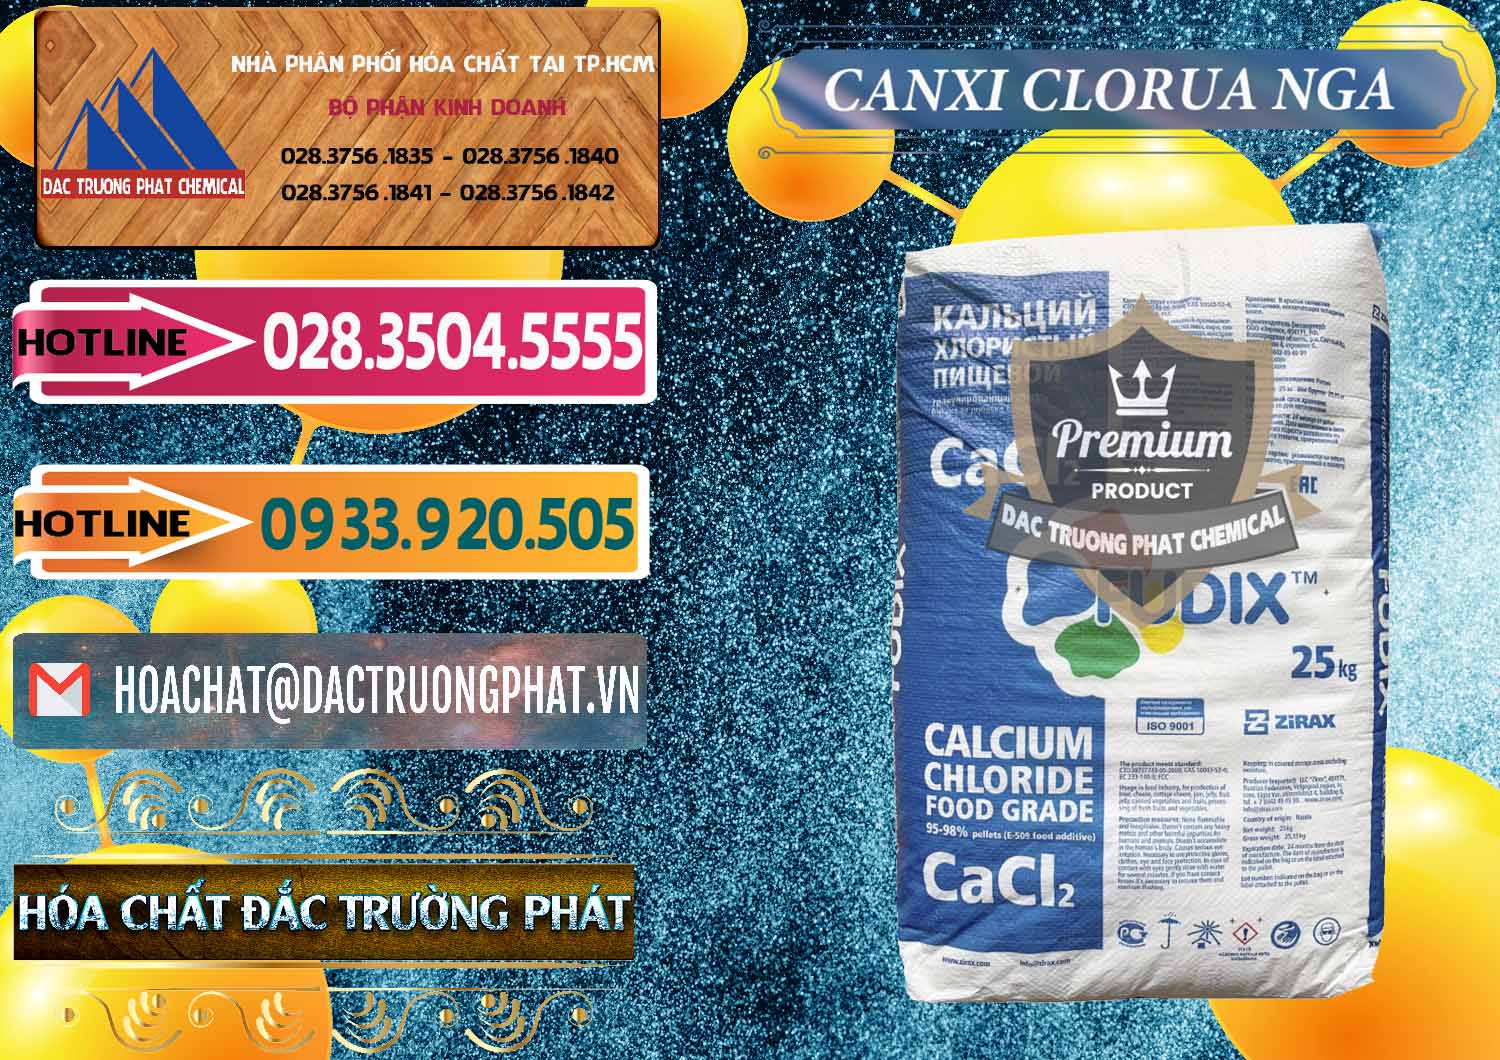 Cty chuyên bán & phân phối CaCl2 – Canxi Clorua Nga Russia - 0430 - Công ty cung cấp & bán hóa chất tại TP.HCM - dactruongphat.vn